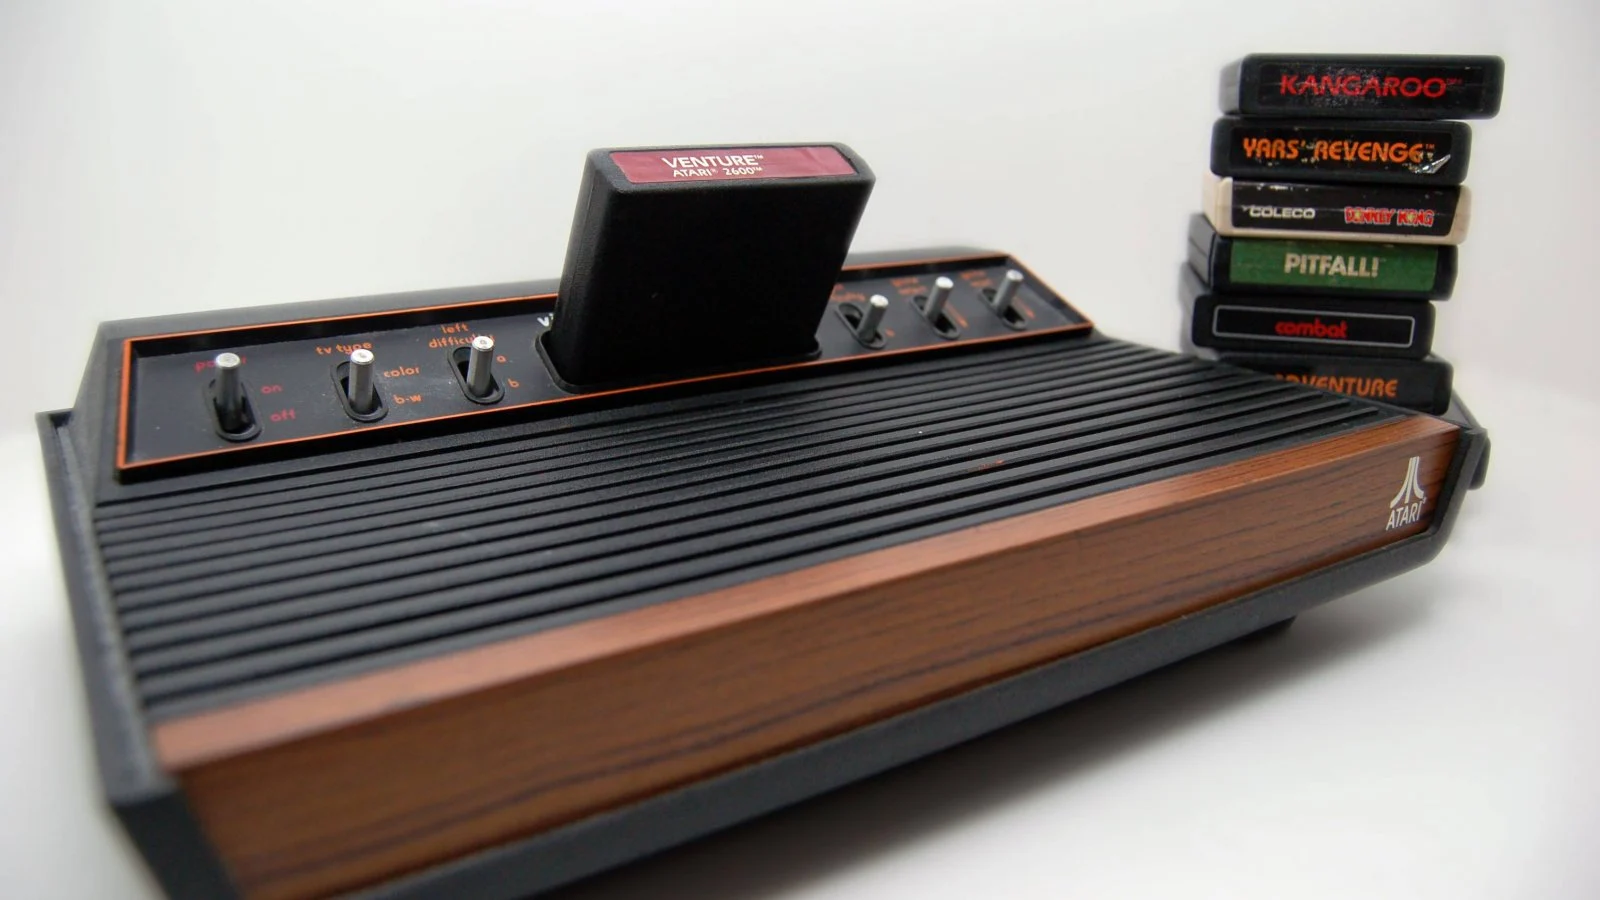 Atari хочет возродить больше своих классических игровых систем после успеха Atari 2600+